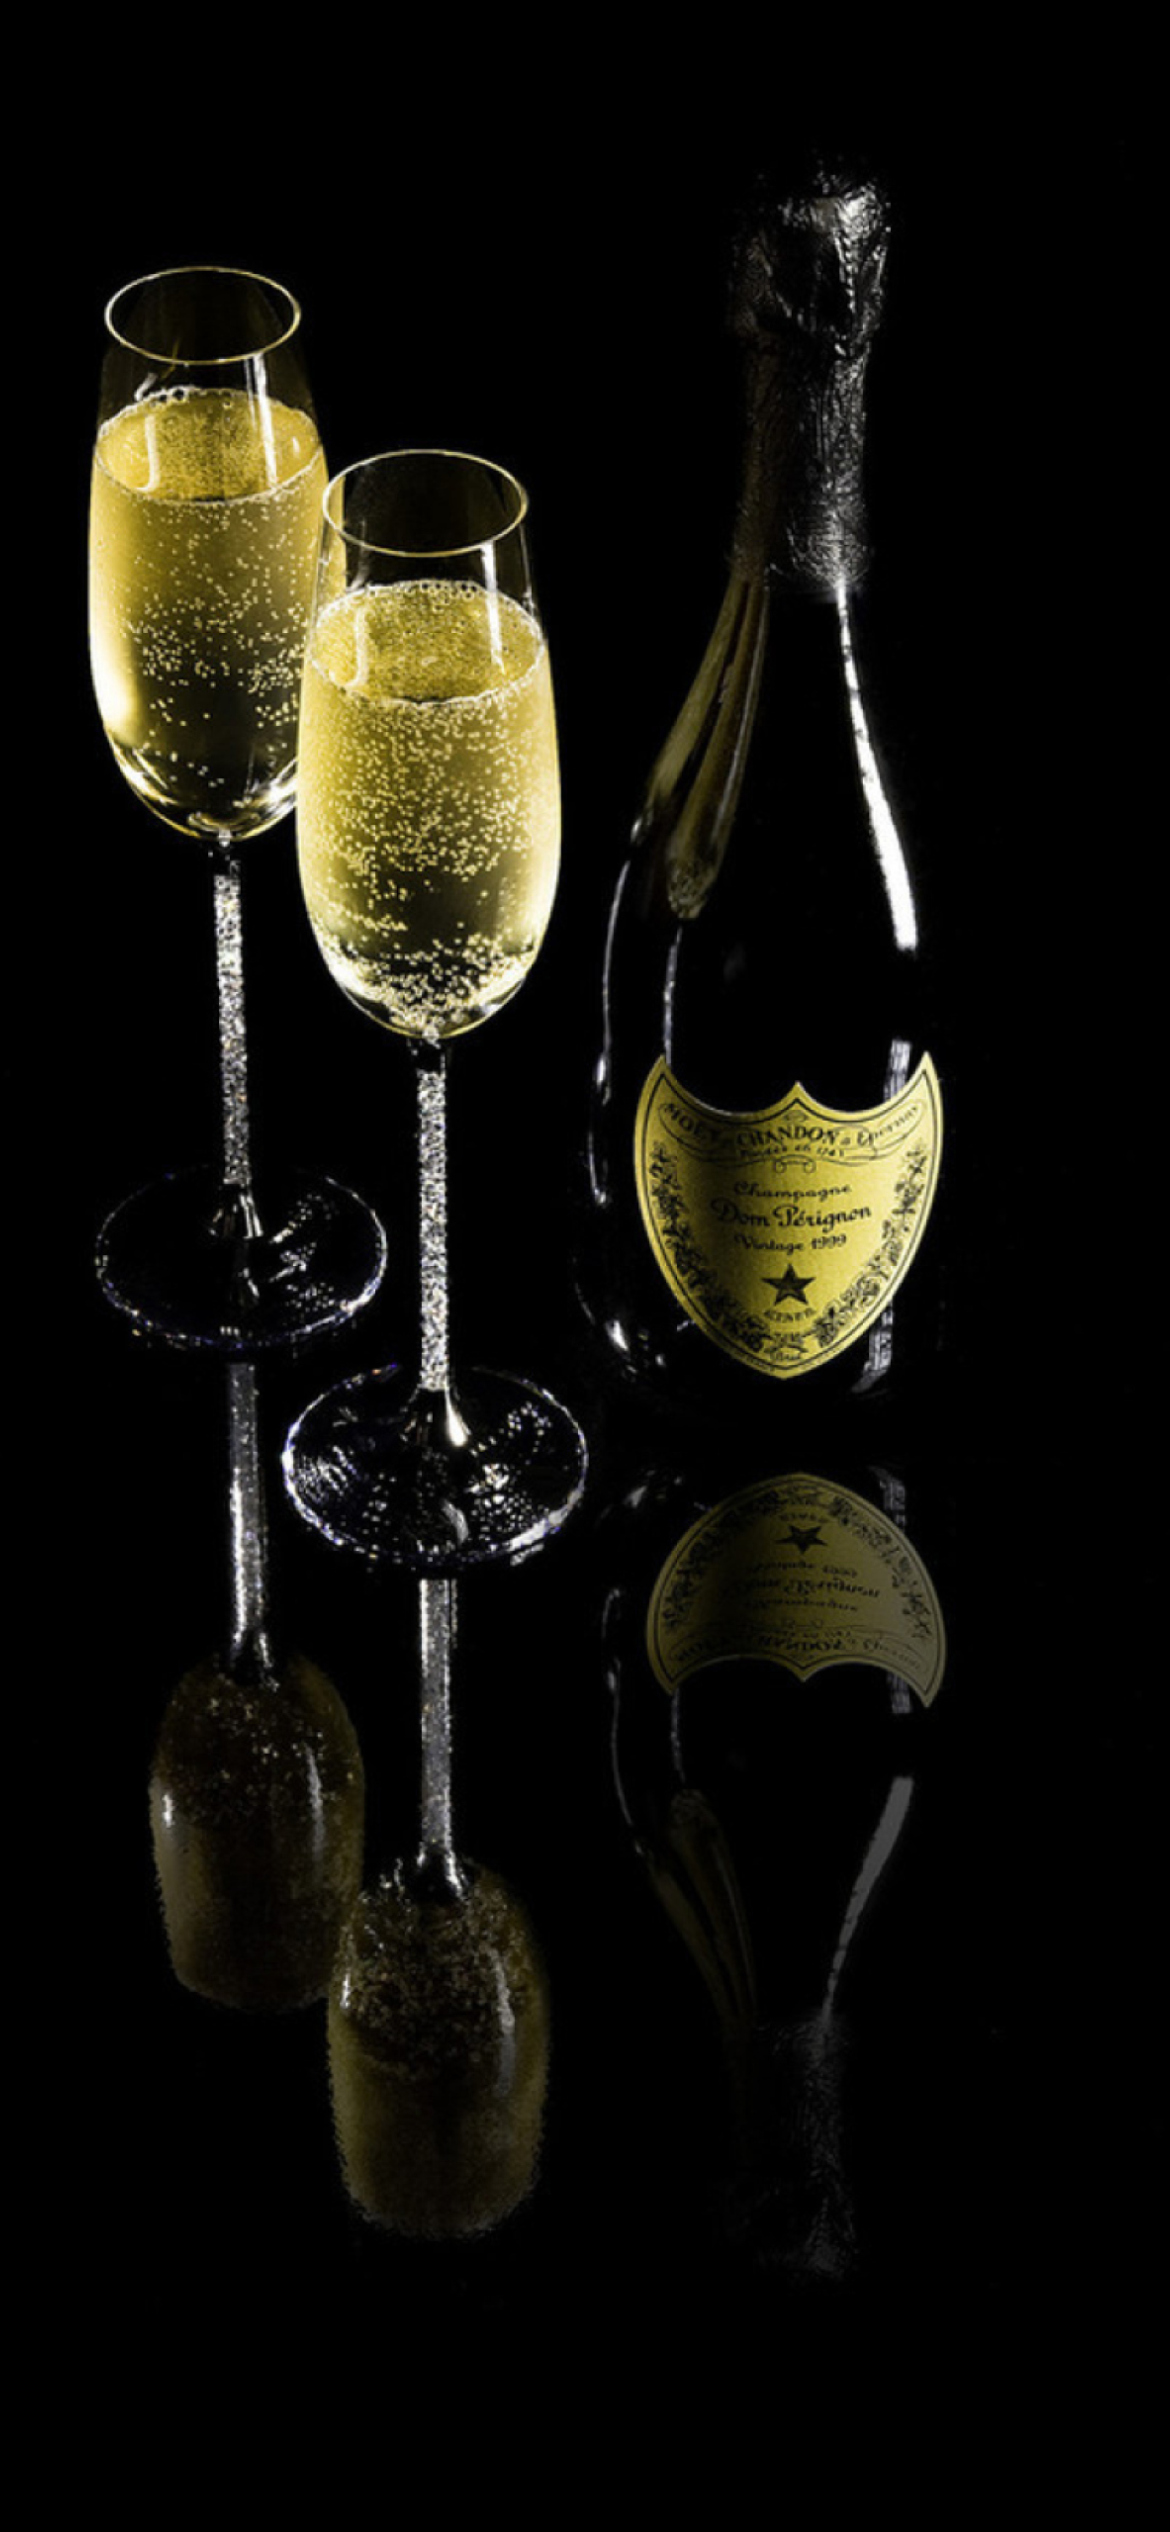 Das Dom Perignon Champagne Wallpaper 1170x2532